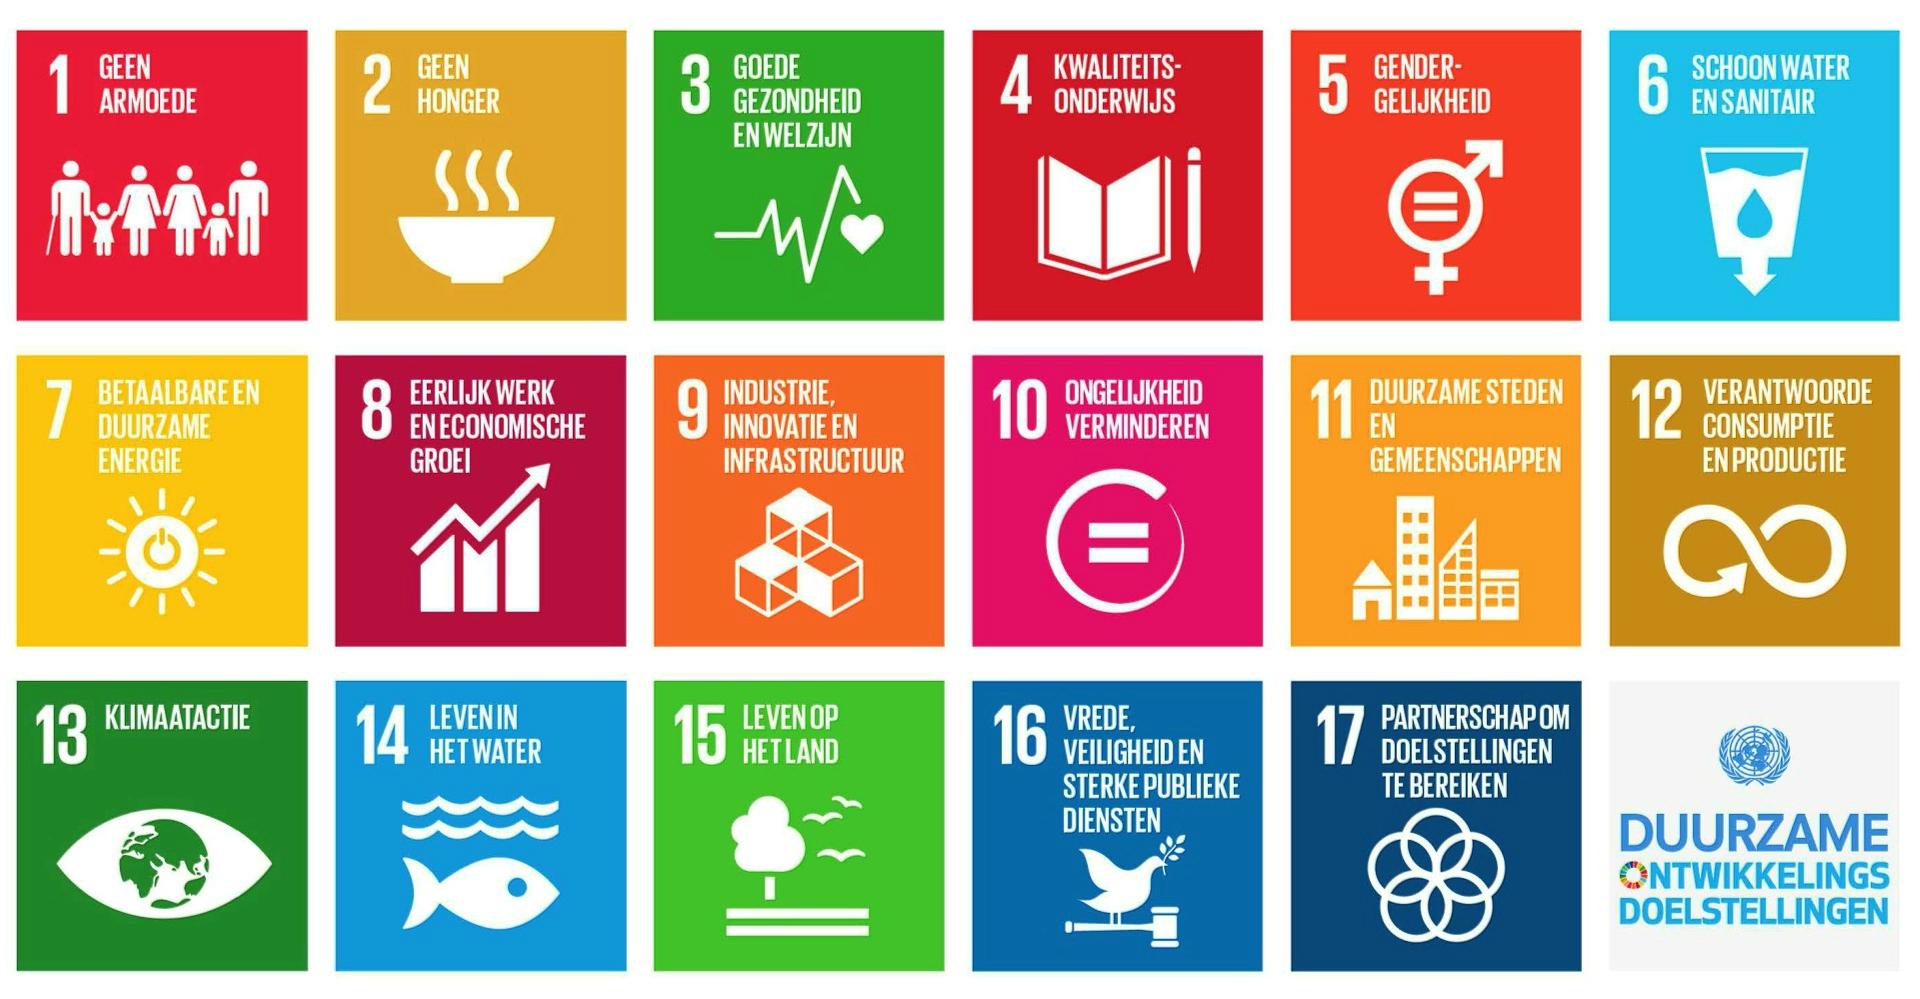 Global Goals doelstellingen